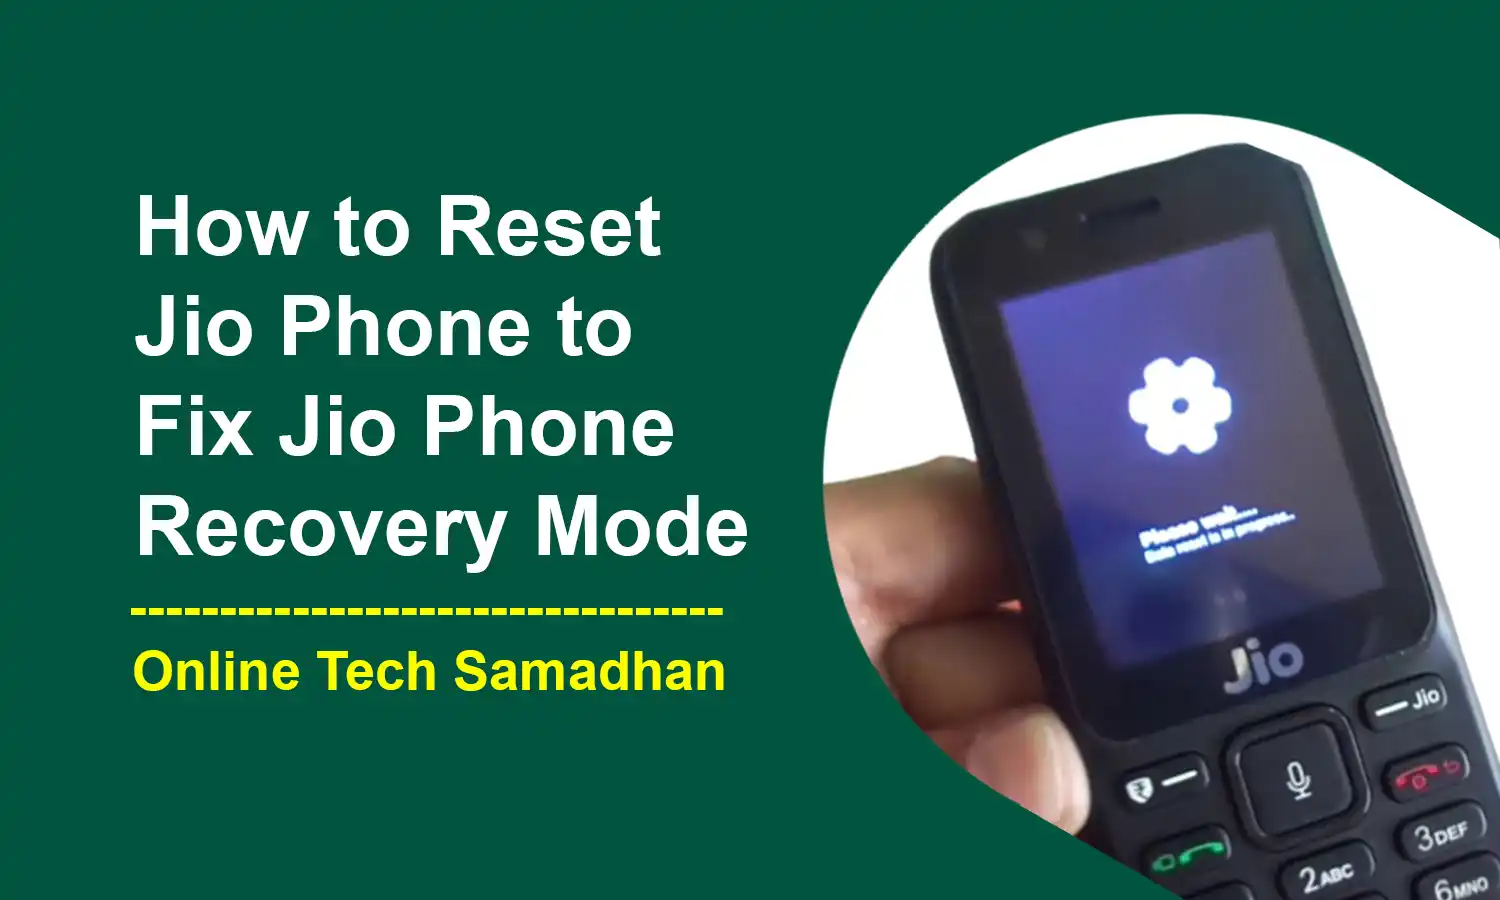 How to Reset Jio Phone to Fix Jio Phone Recovery Mode Easily